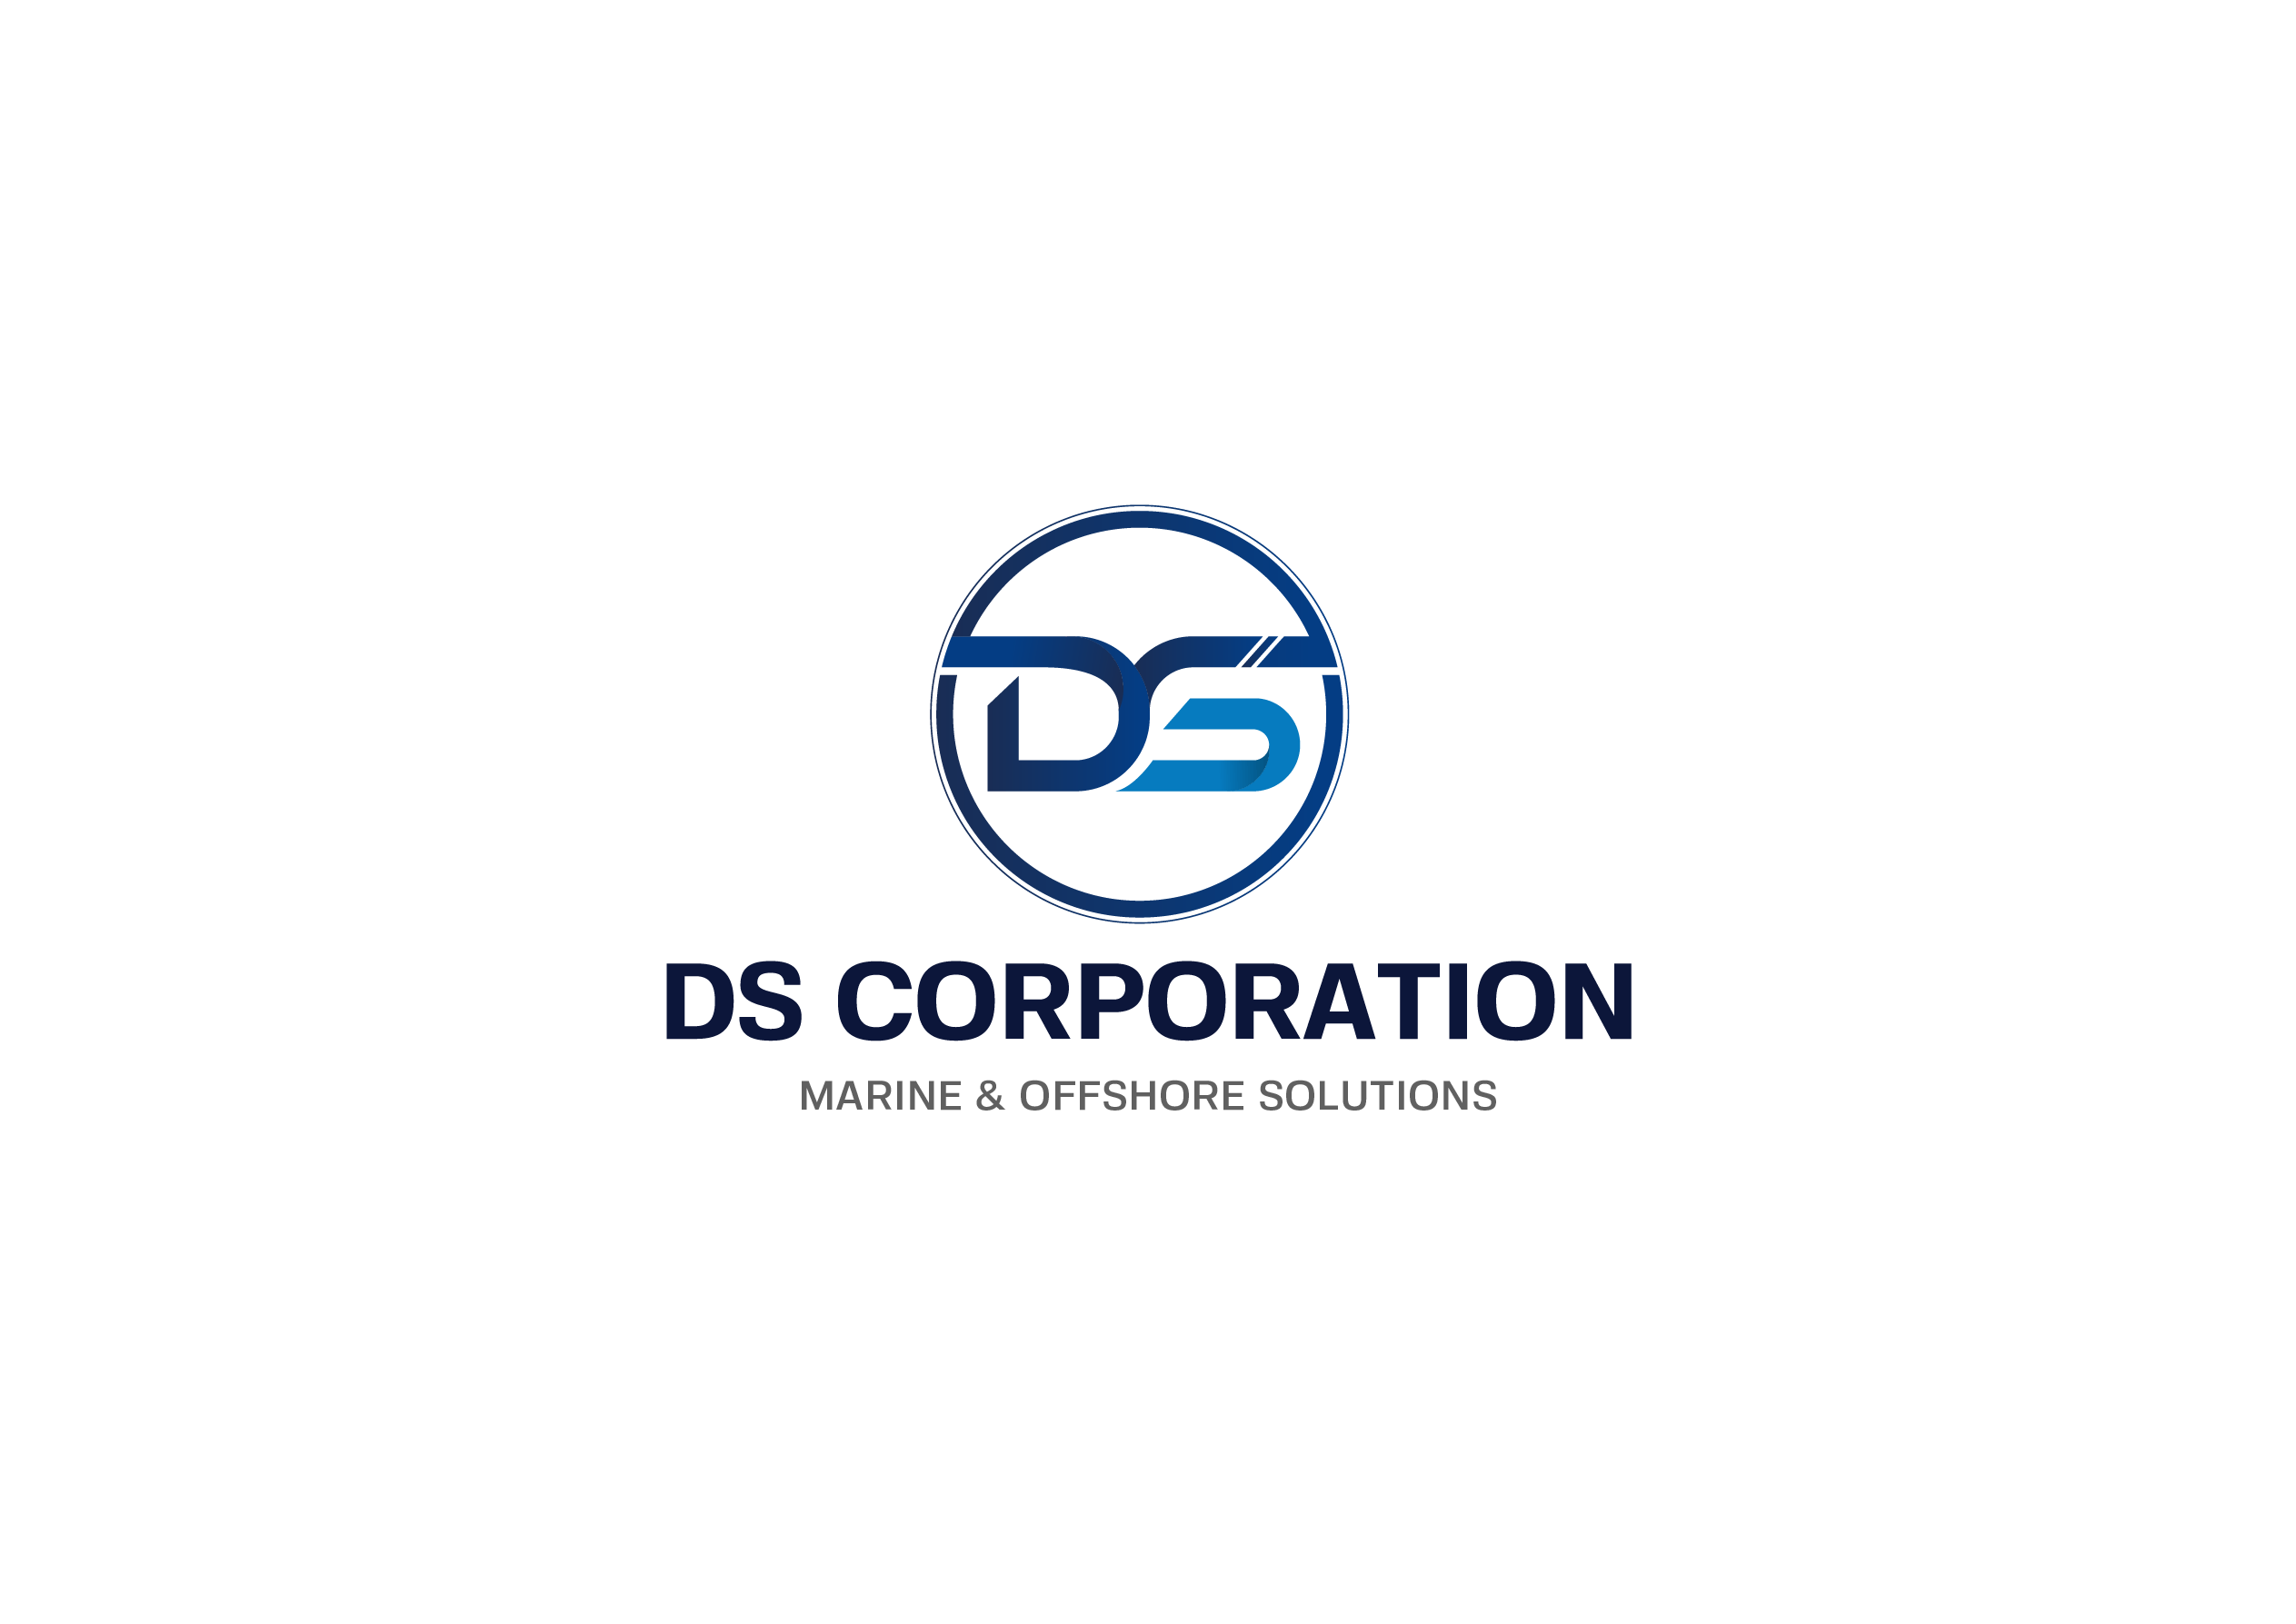 DS CORPORATION